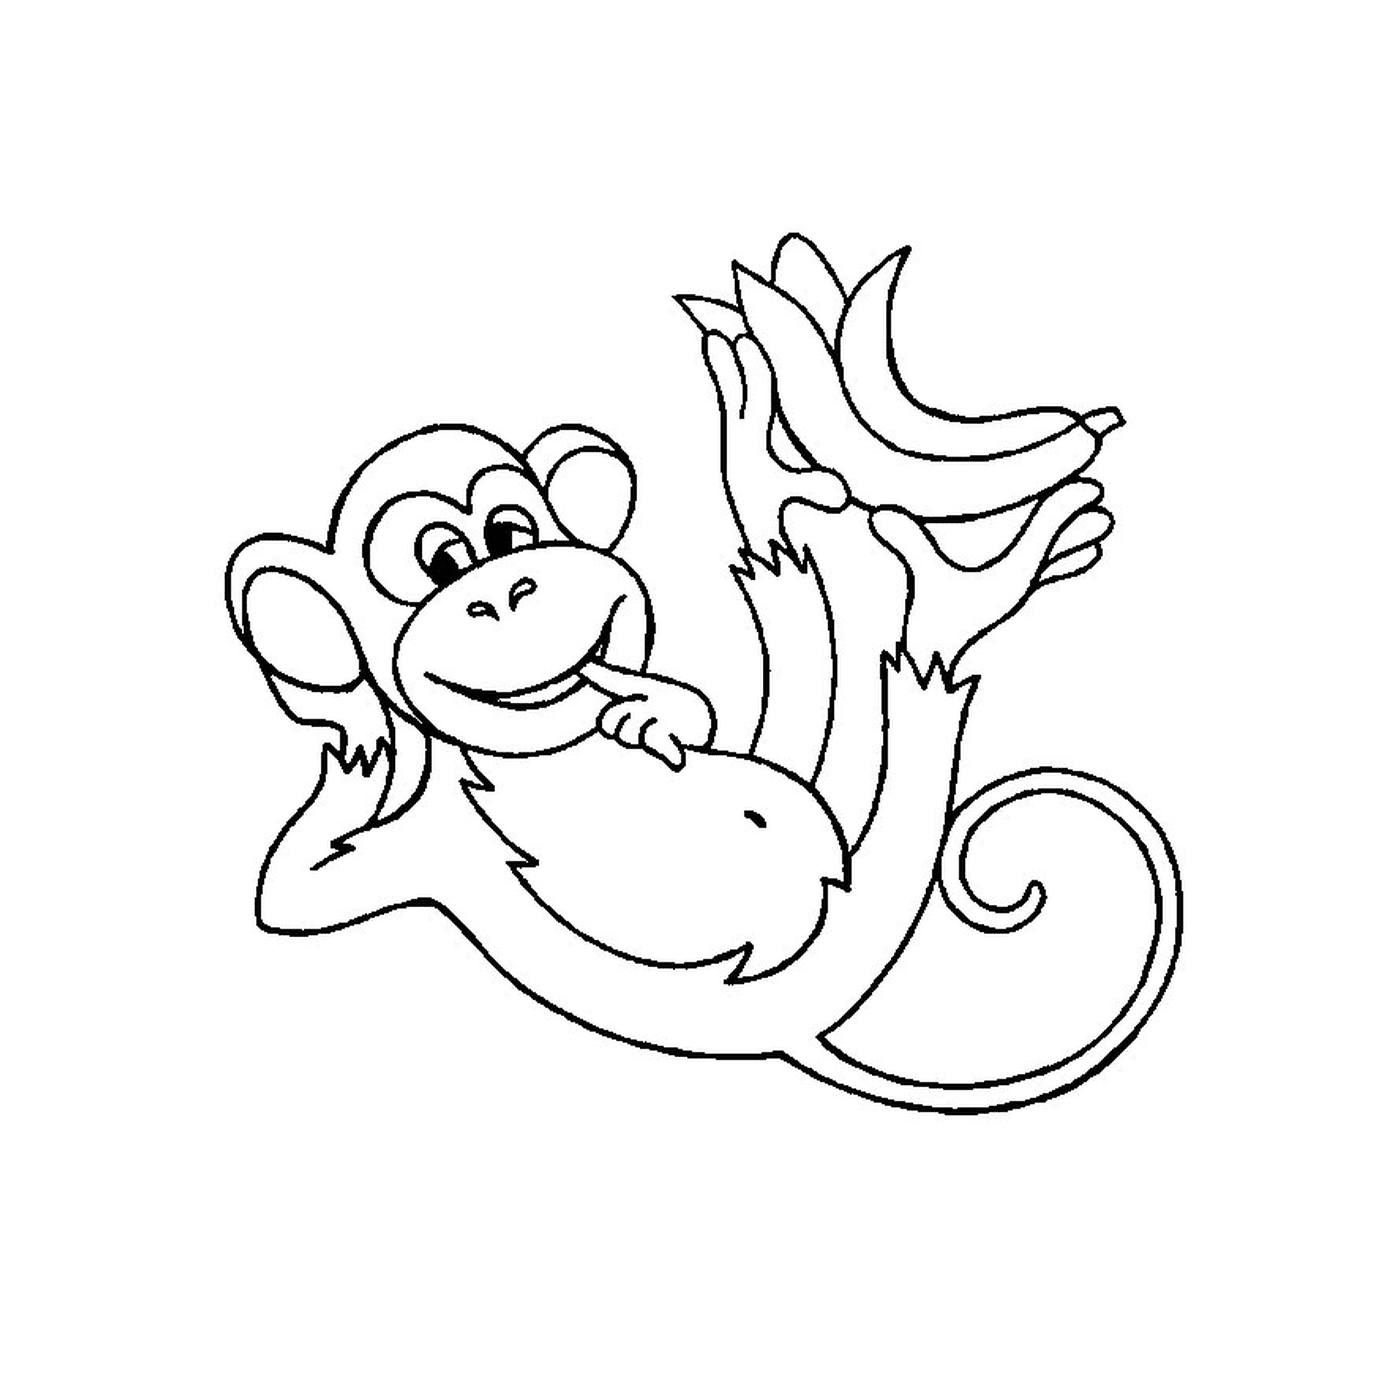  一只拿着香蕉的猴子 